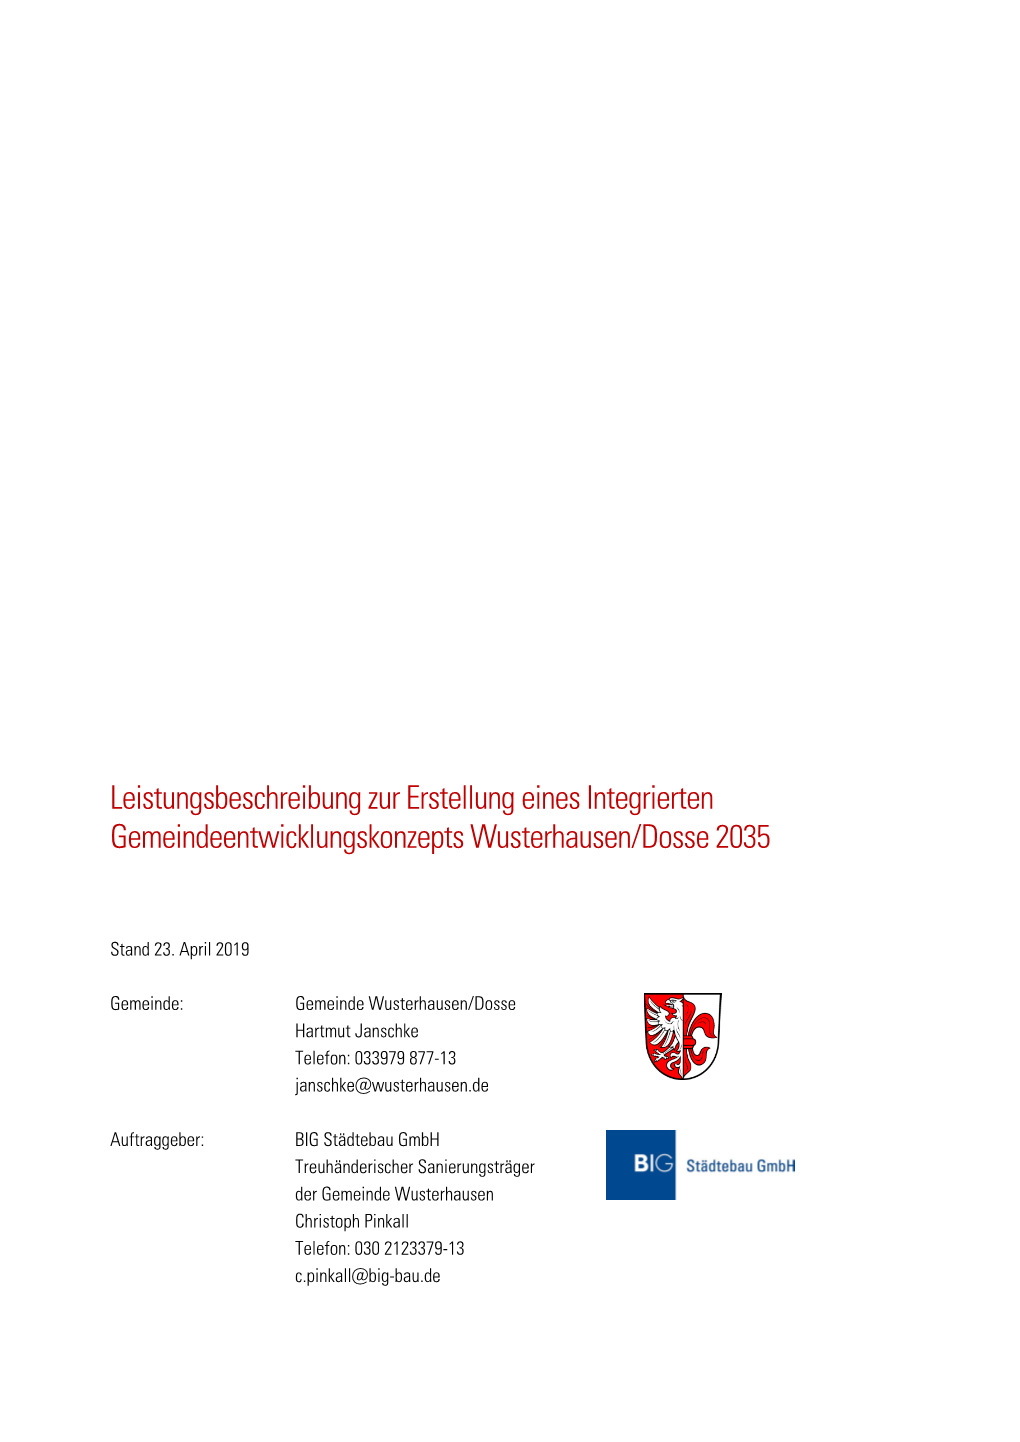 Leistungsbeschreibung Zur Erstellung Eines Integrierten Gemeindeentwicklungskonzepts Wusterhausen/Dosse 2035